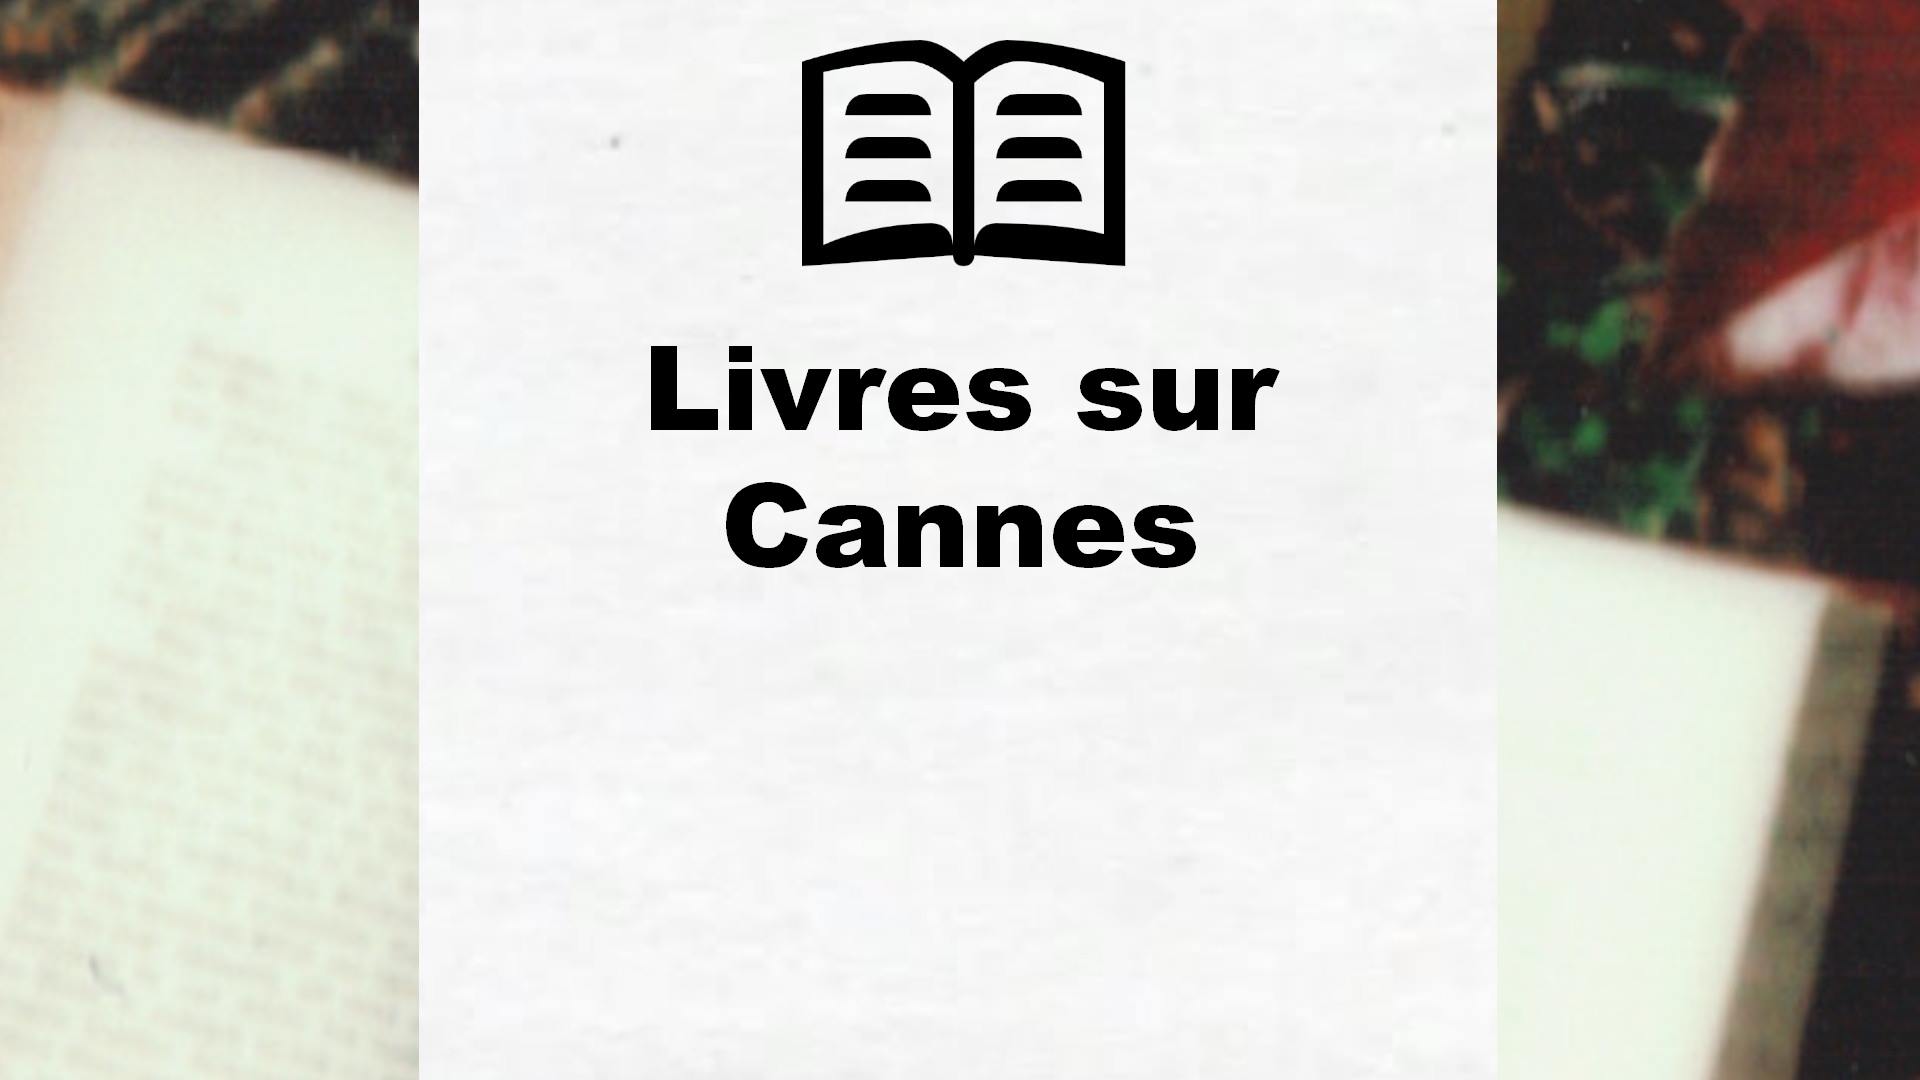 Livres sur Cannes